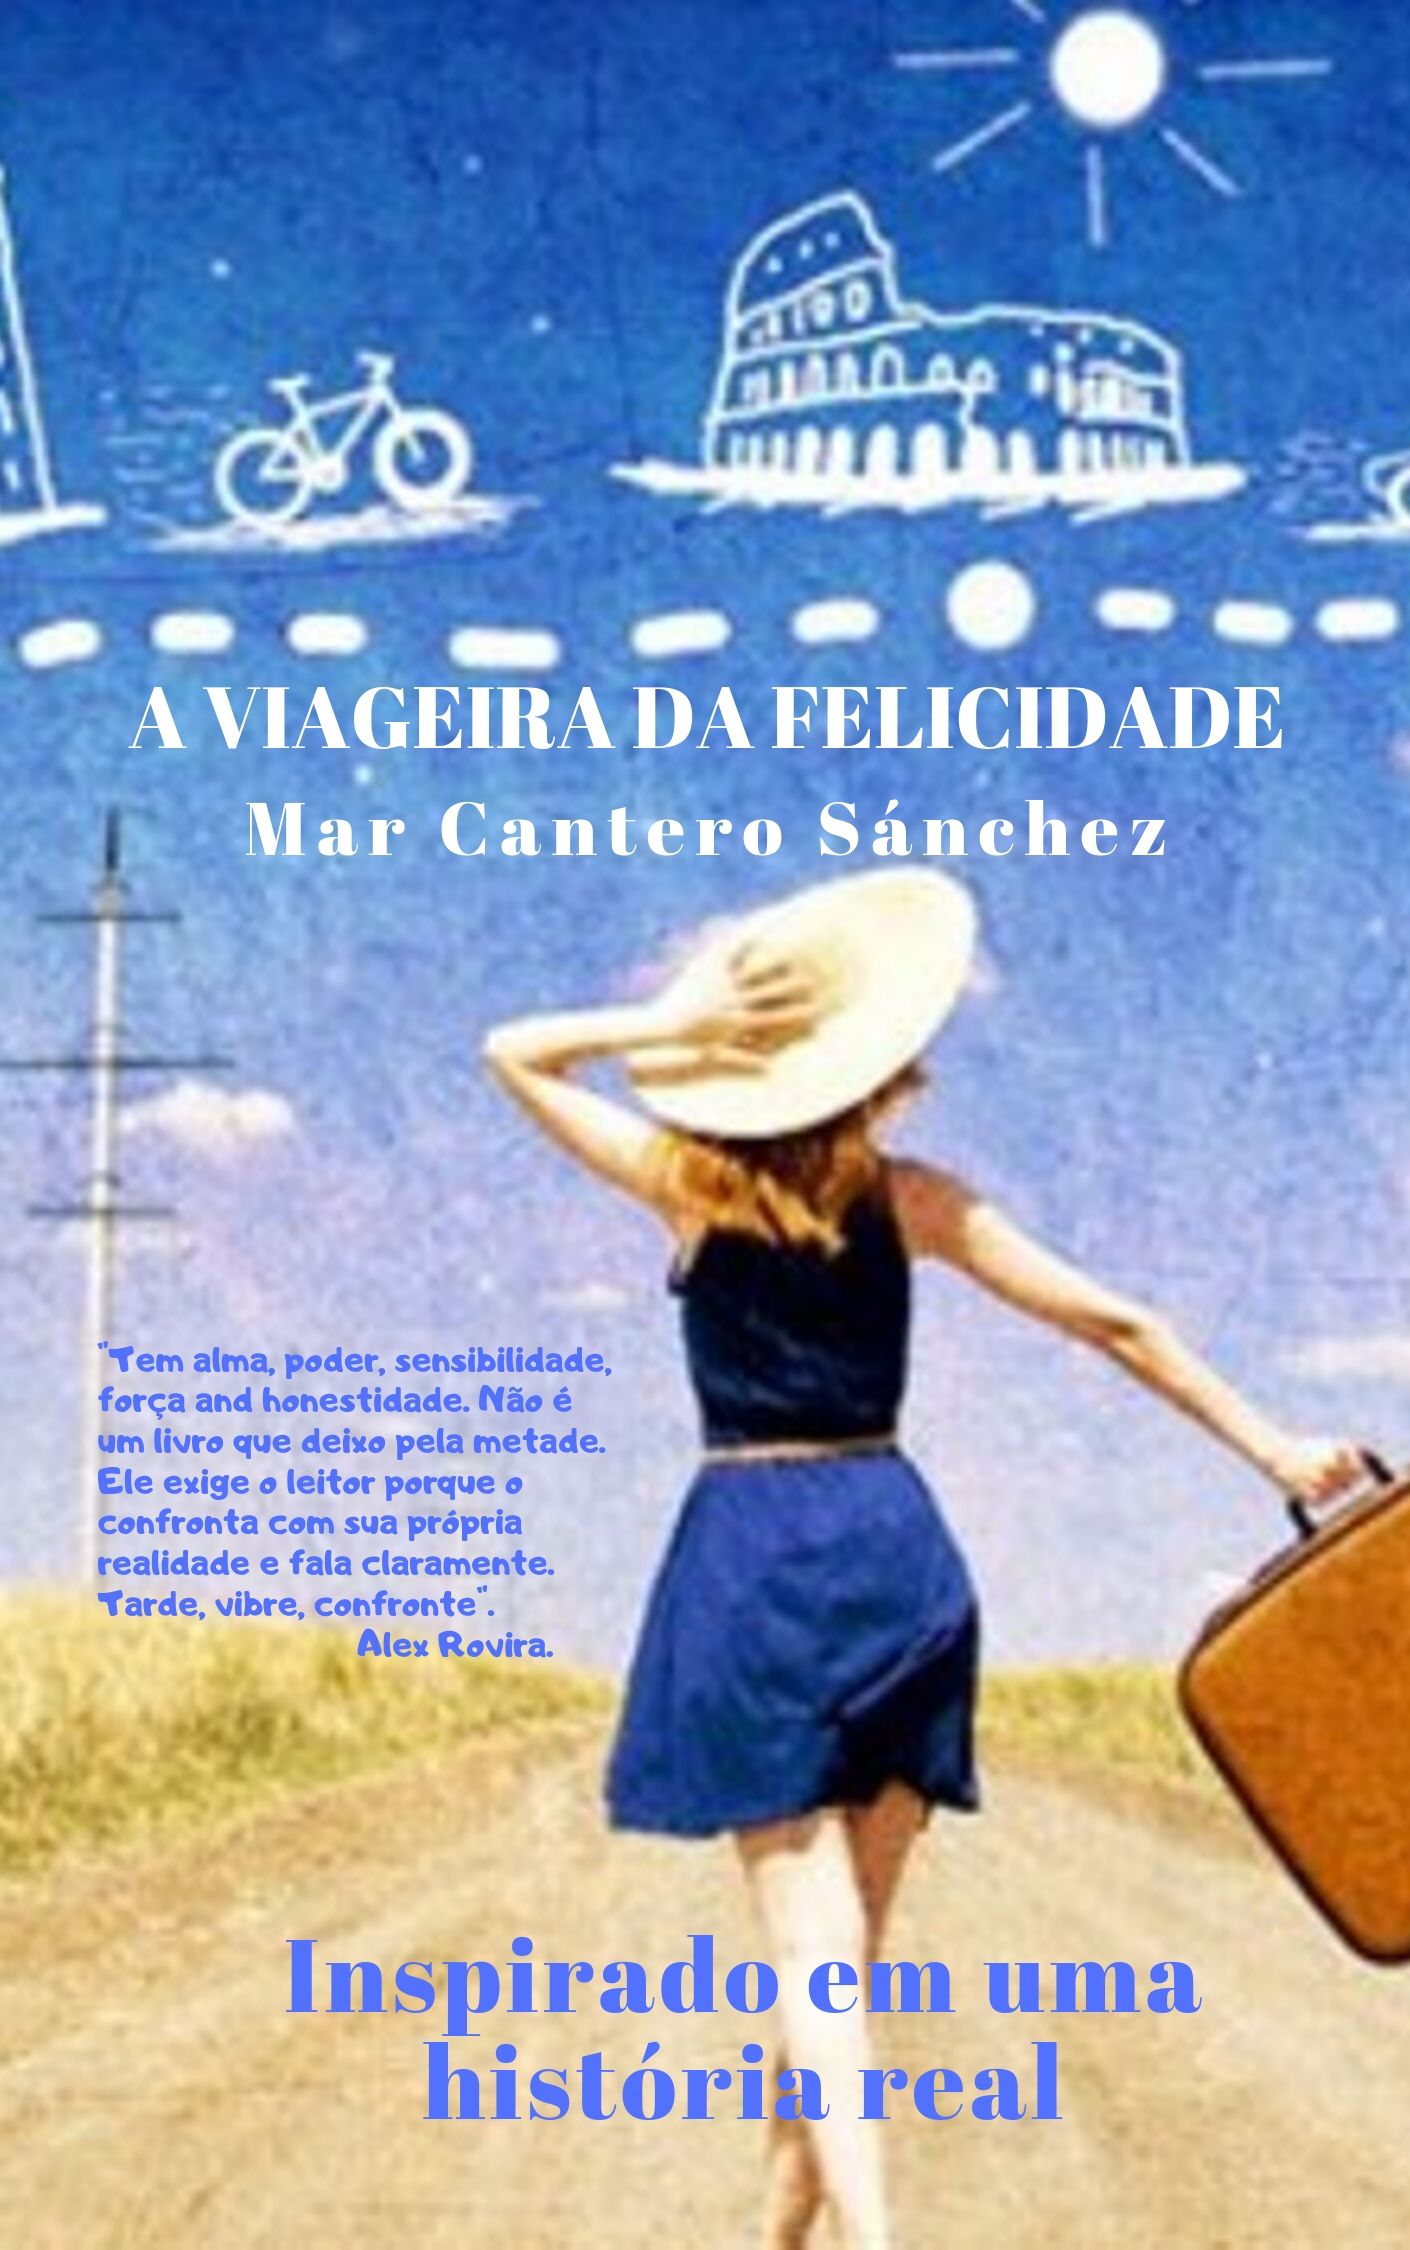 A VIAGEIRA DA FELICIDADE, Mar Cantero Sánchez, www.marcantero.com